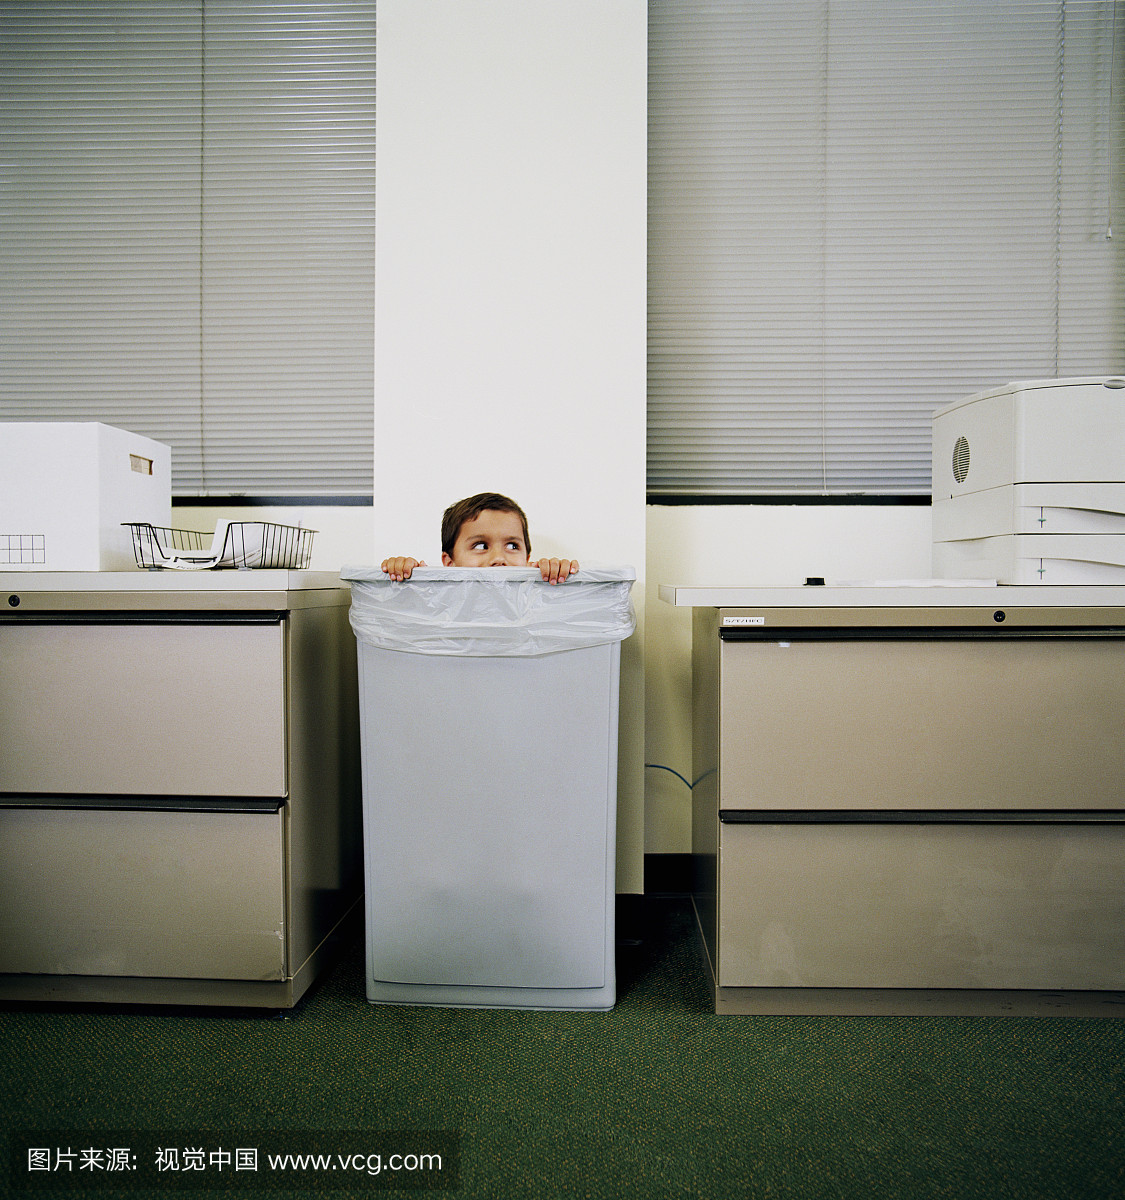 躲在垃圾桶的男孩(4-8)可以在办公室(上部)